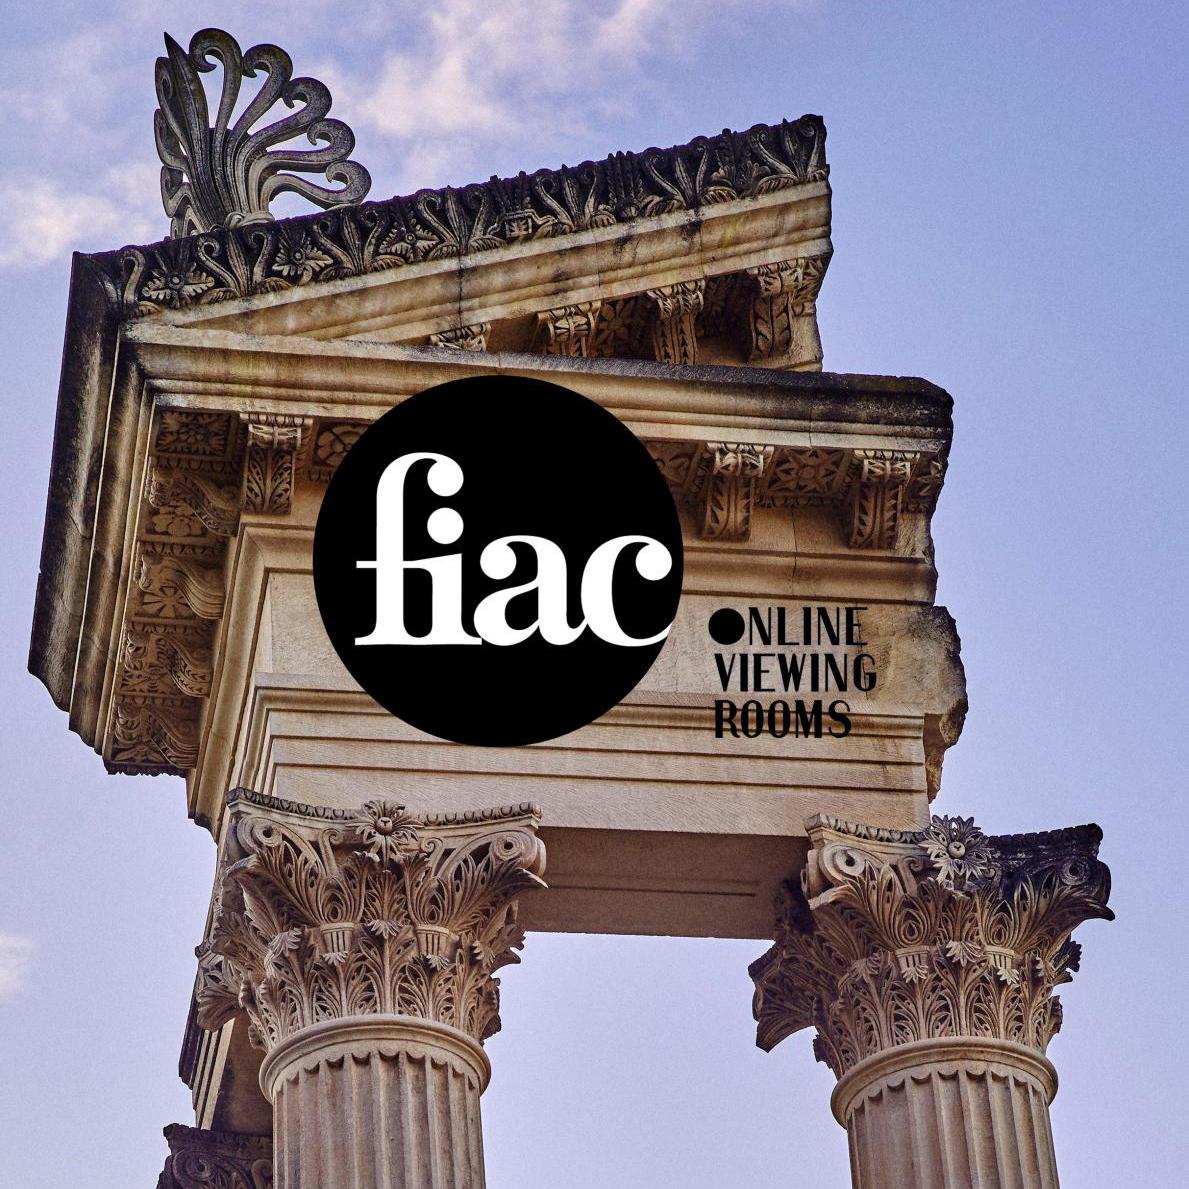 FIAC Goes Online